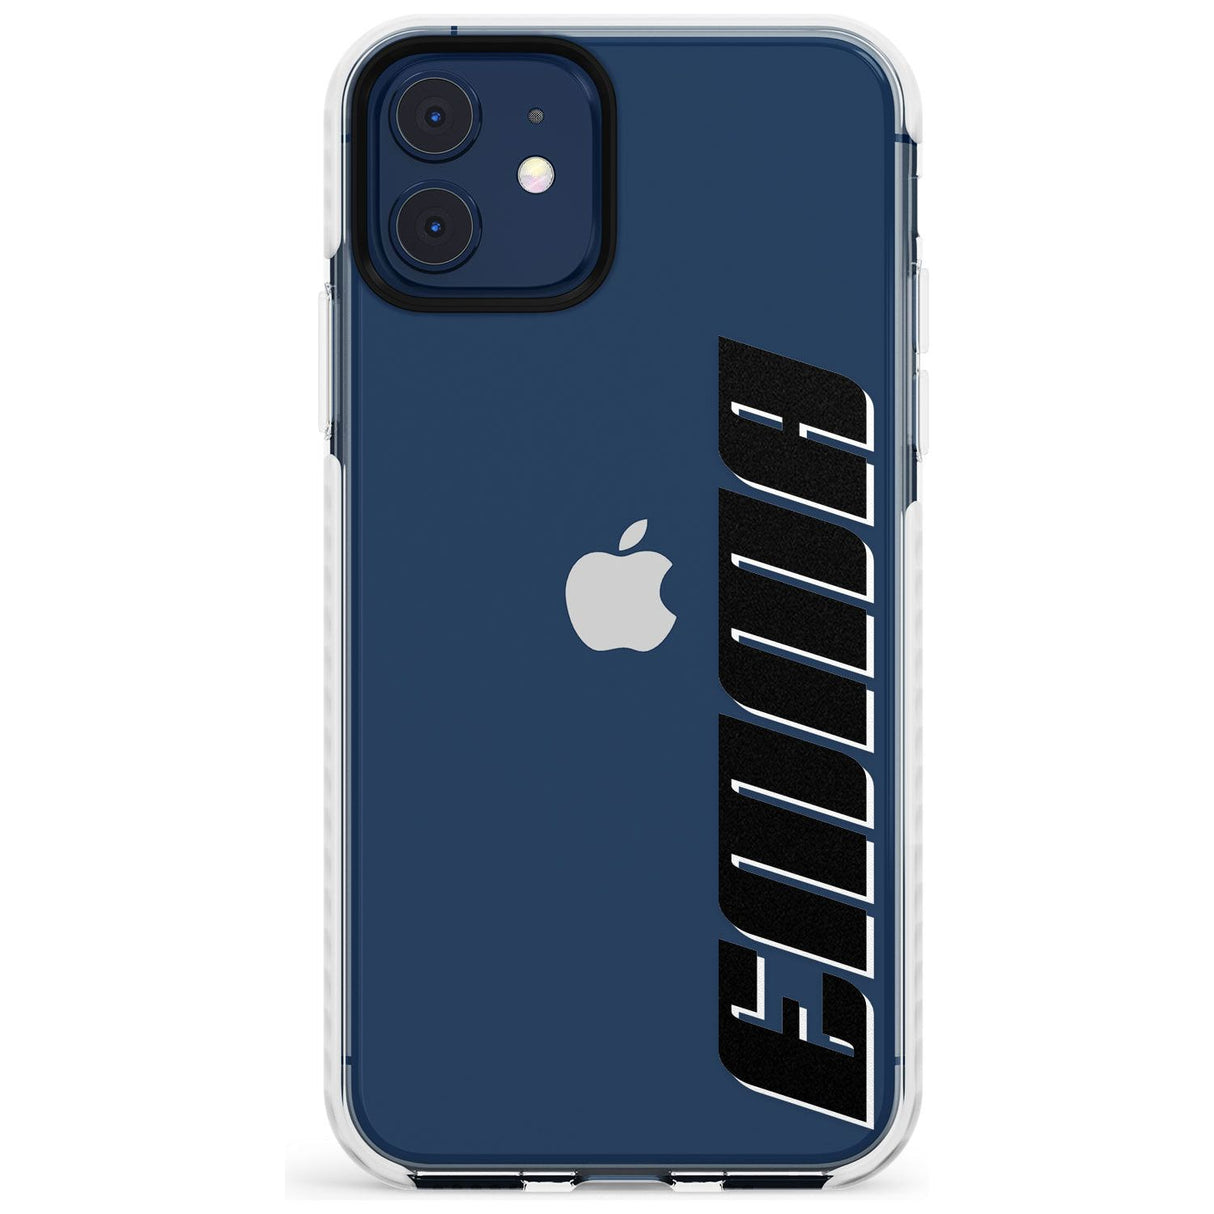 Custom Iphone Case 4A Slim TPU Phone Case for iPhone 11